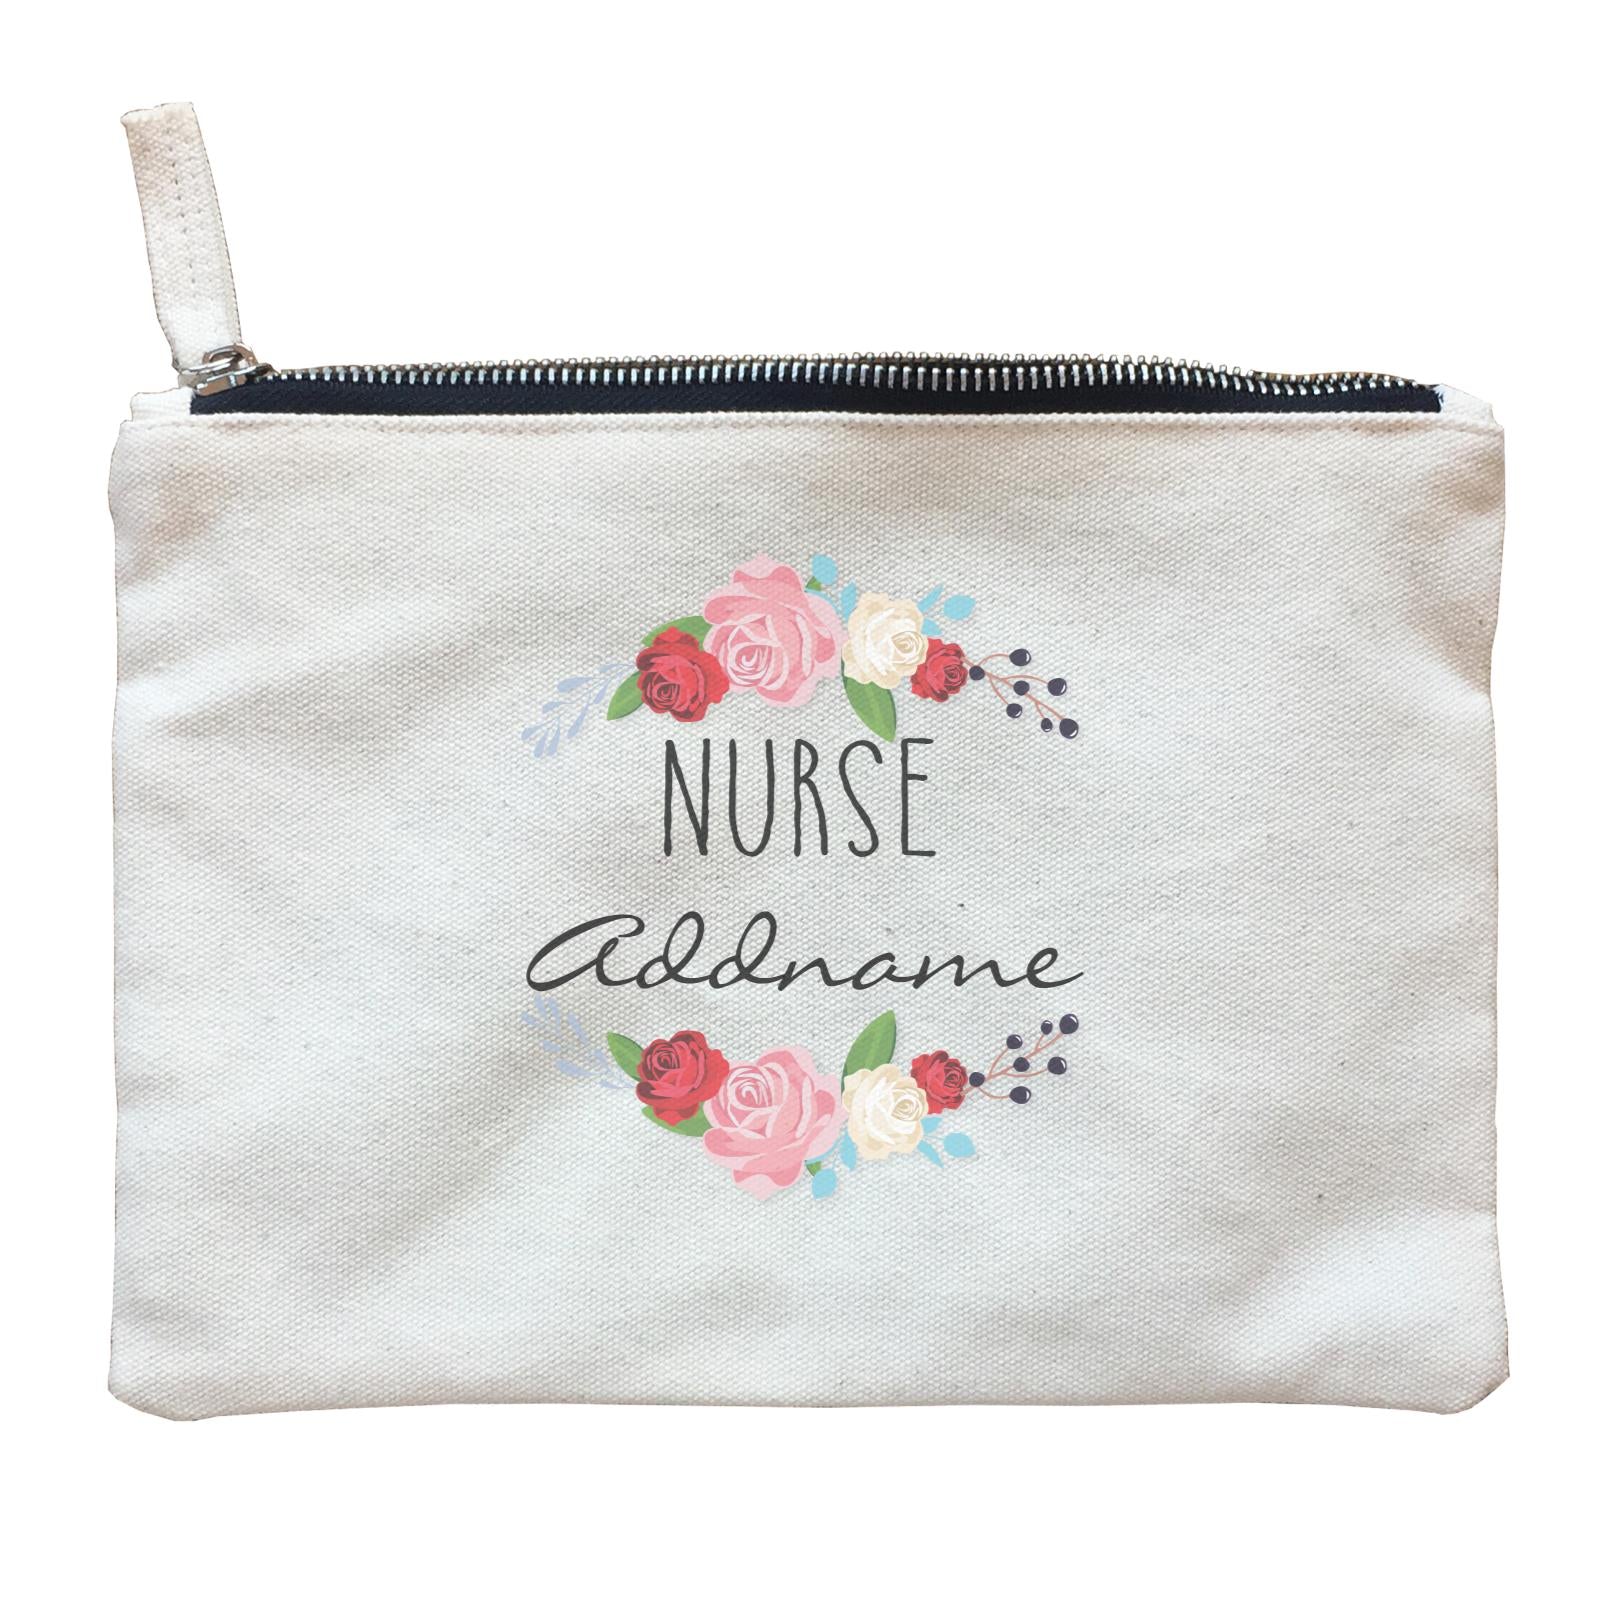 Nurse Quotes Flower Wreath Nurse Addname Zipper Pouch